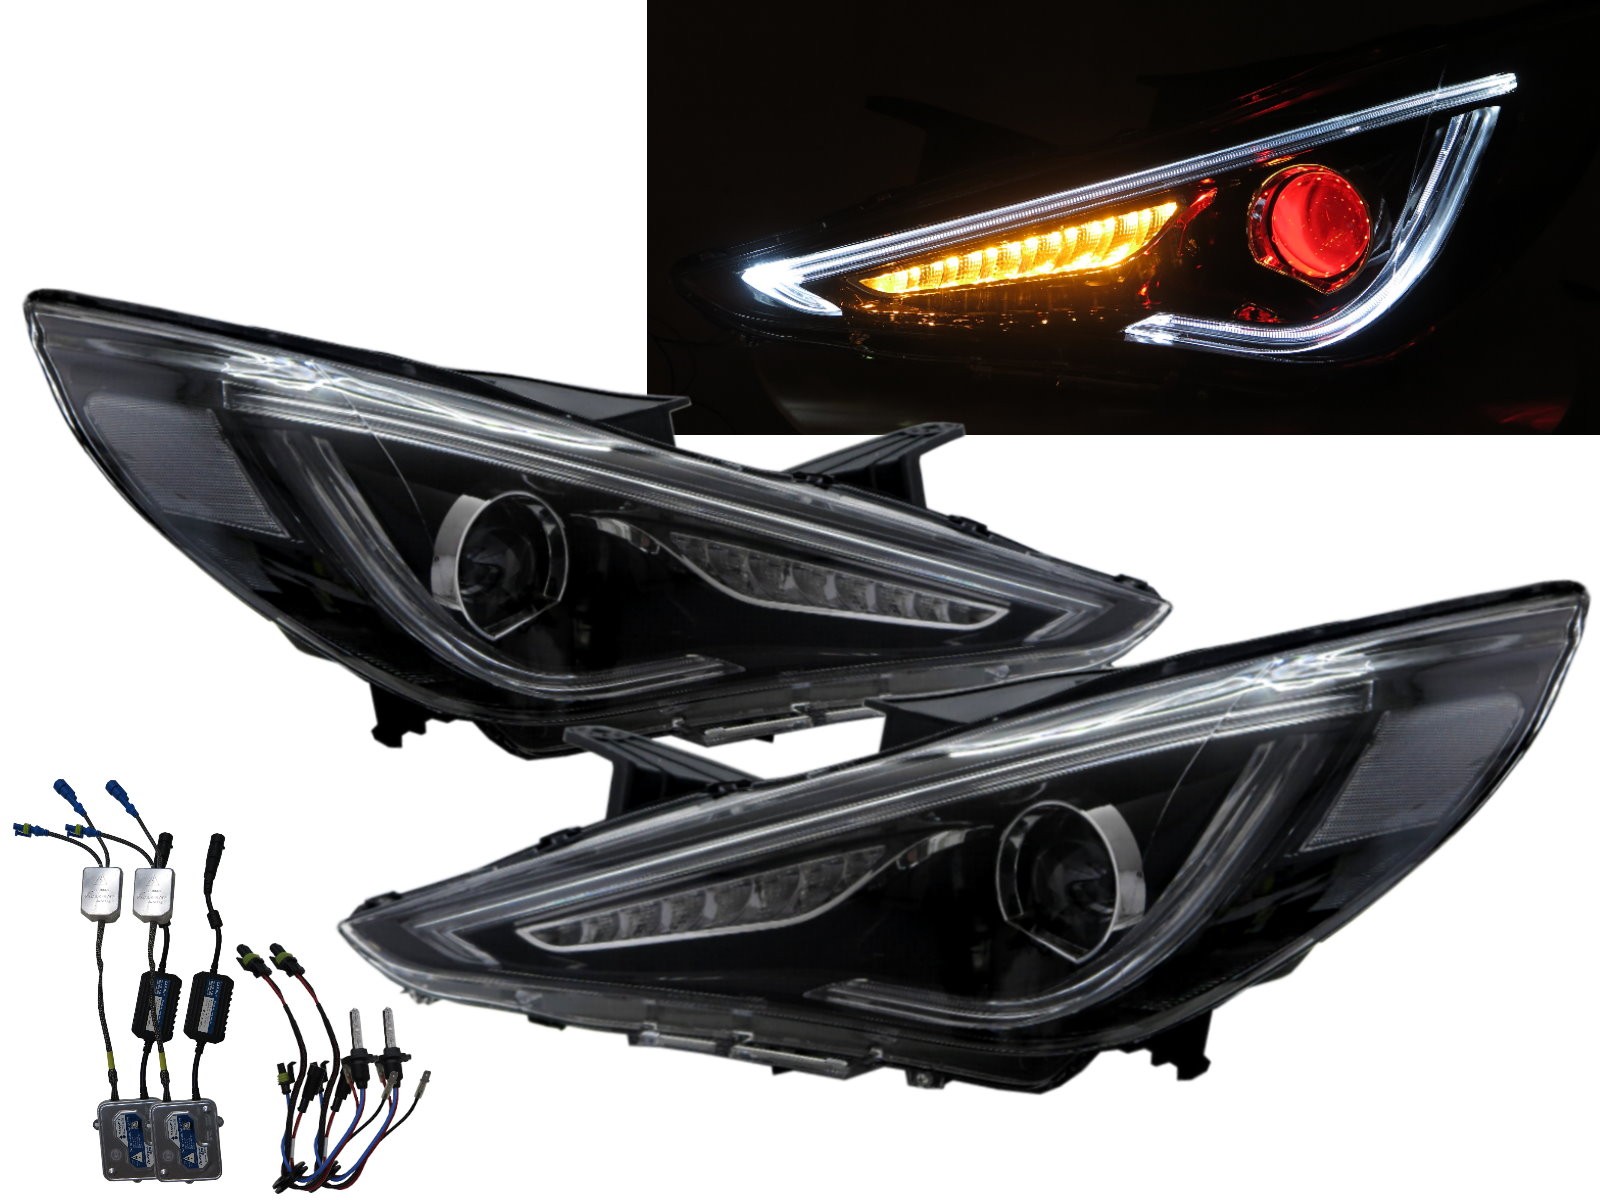 CrazyTheGod SONATA YF Sixth generation 2009-2014 Sedan 4D Bi-Projector LED Dynamic Turn Signal Headlight Headlamp Black for HYUNDAI LHD